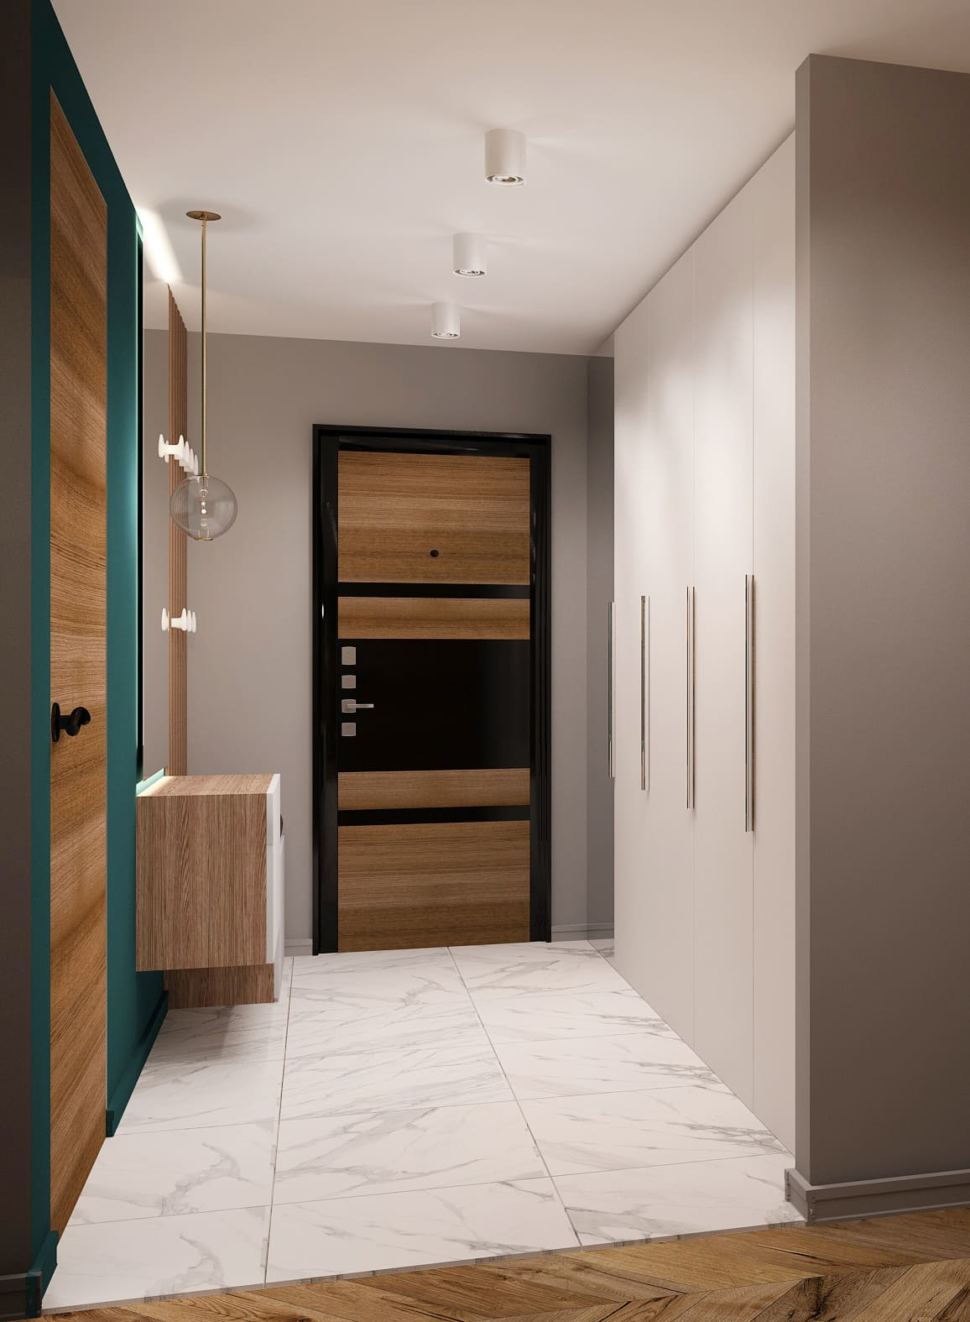 Дизайн-проект прихожей 7 кв.м и коридора 6 кв.м в современном лофте с древесными и серыми оттенками, зеркало, подвесной светильник, белая скамья